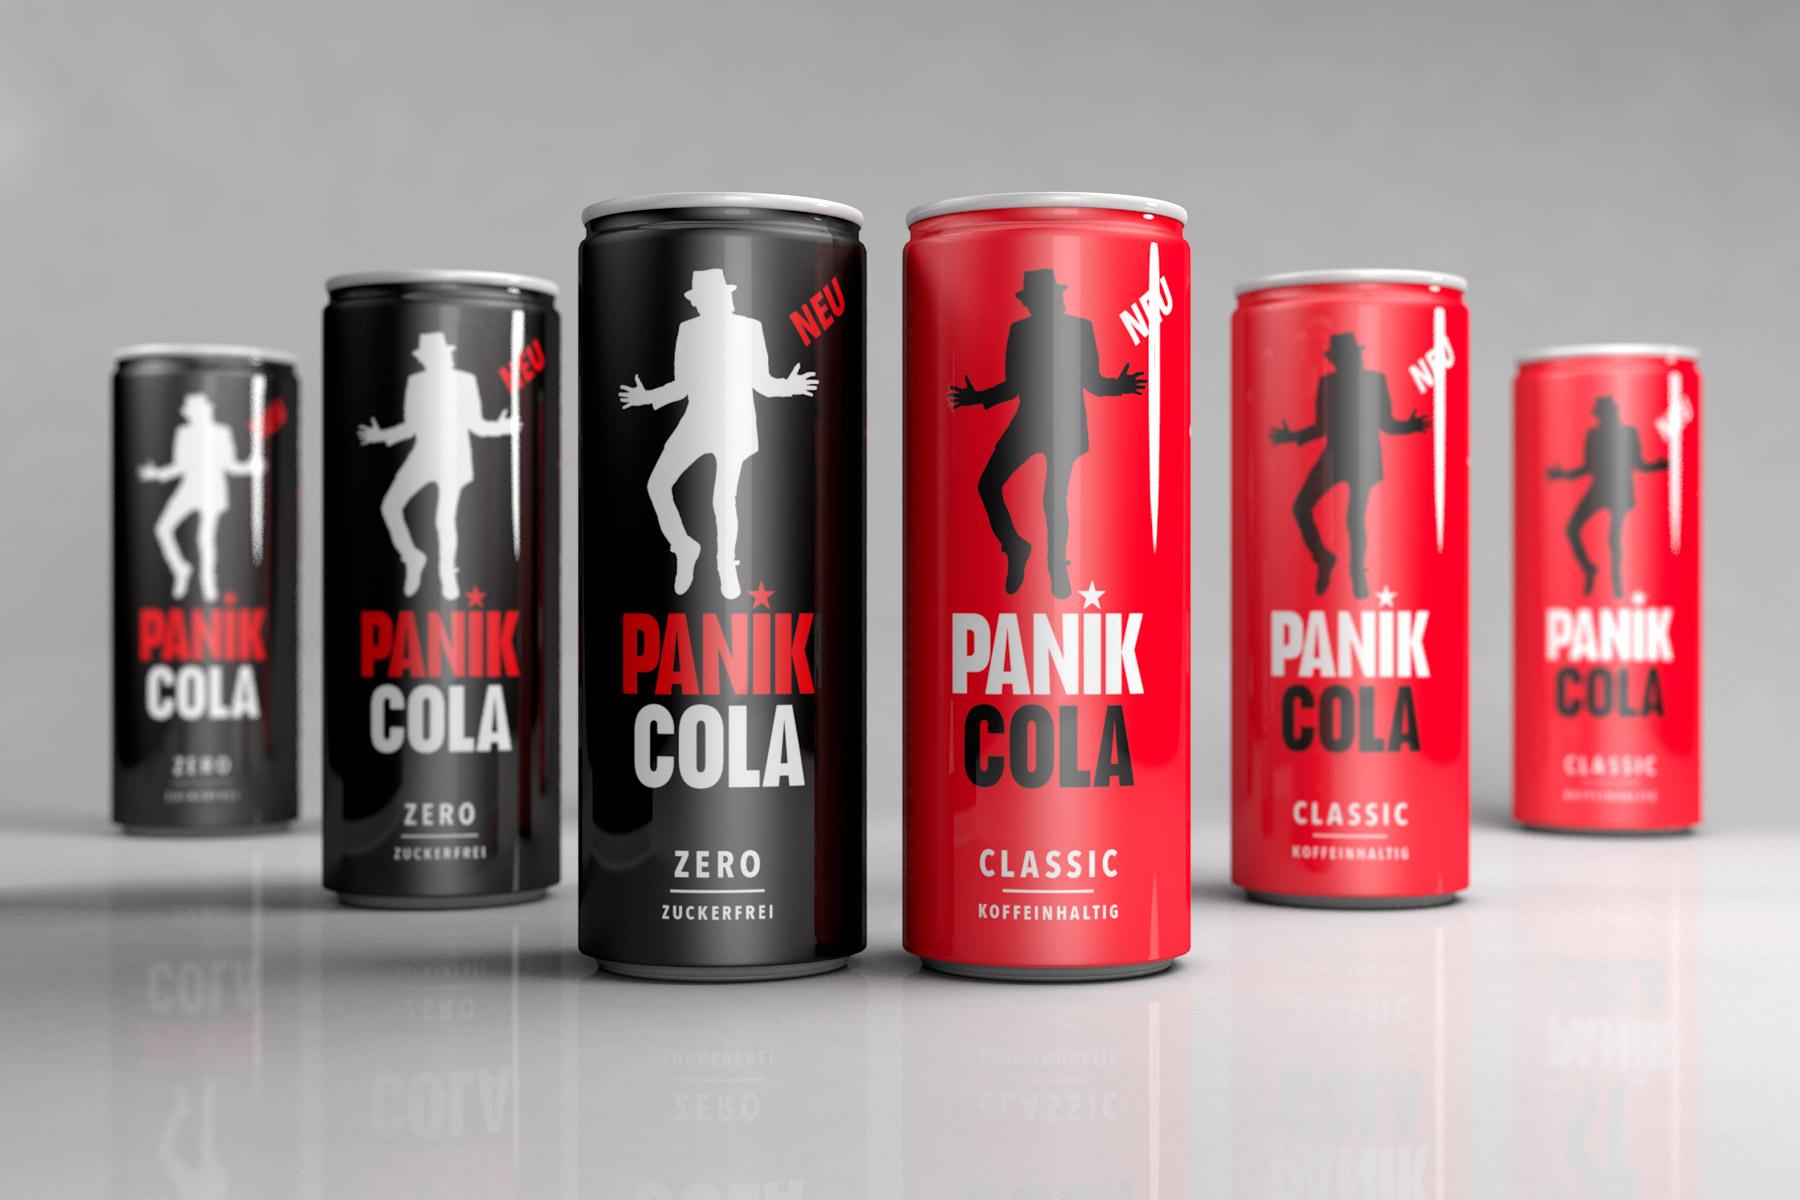 Panik Cola